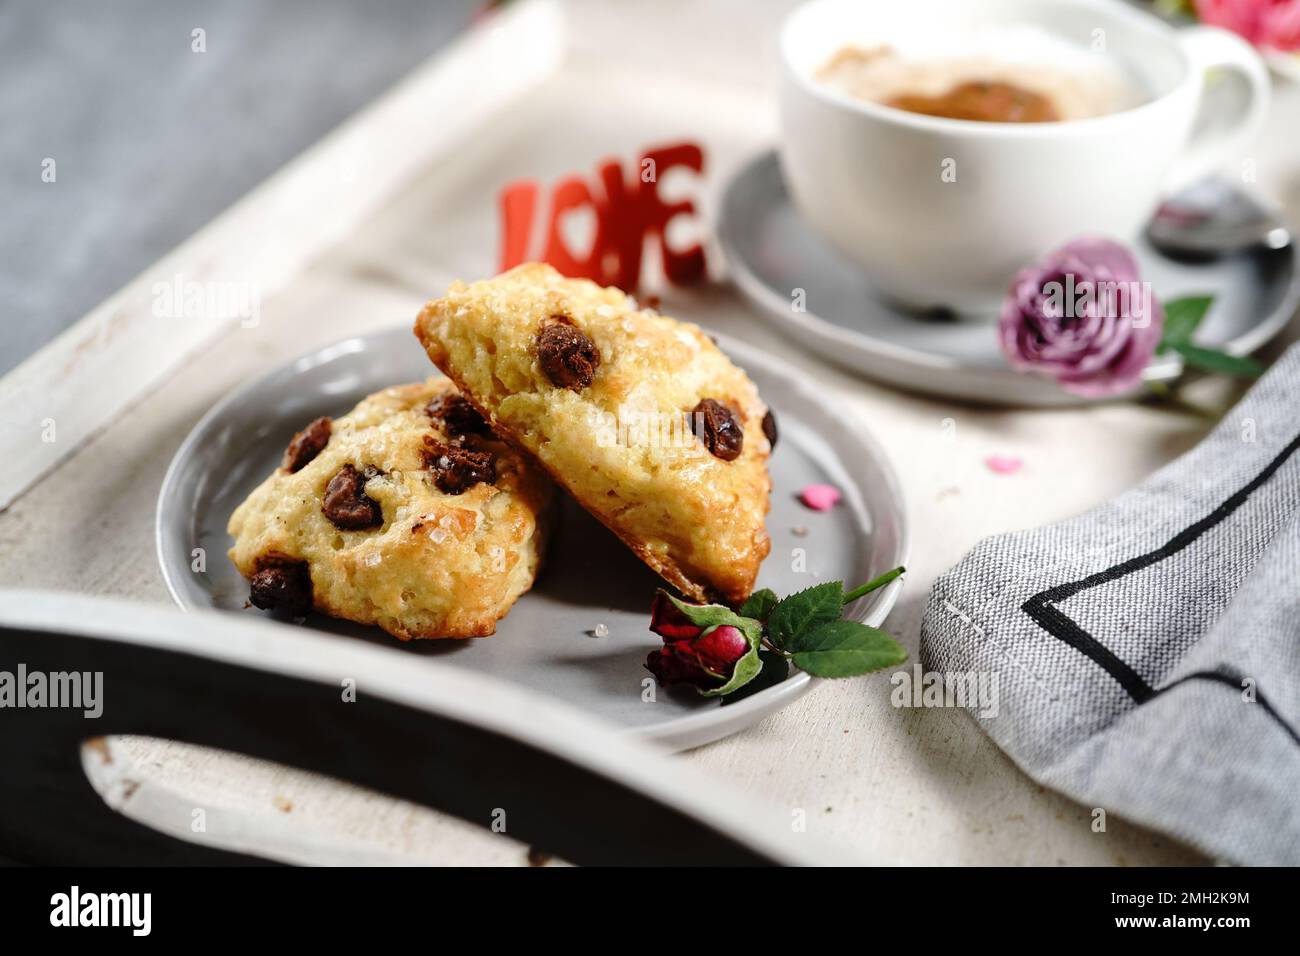 Frühstücksraum am Valentinstag - Scones Cappuccino Herz und Rosen auf einem Tablett, selektiver Fokus Stockfoto